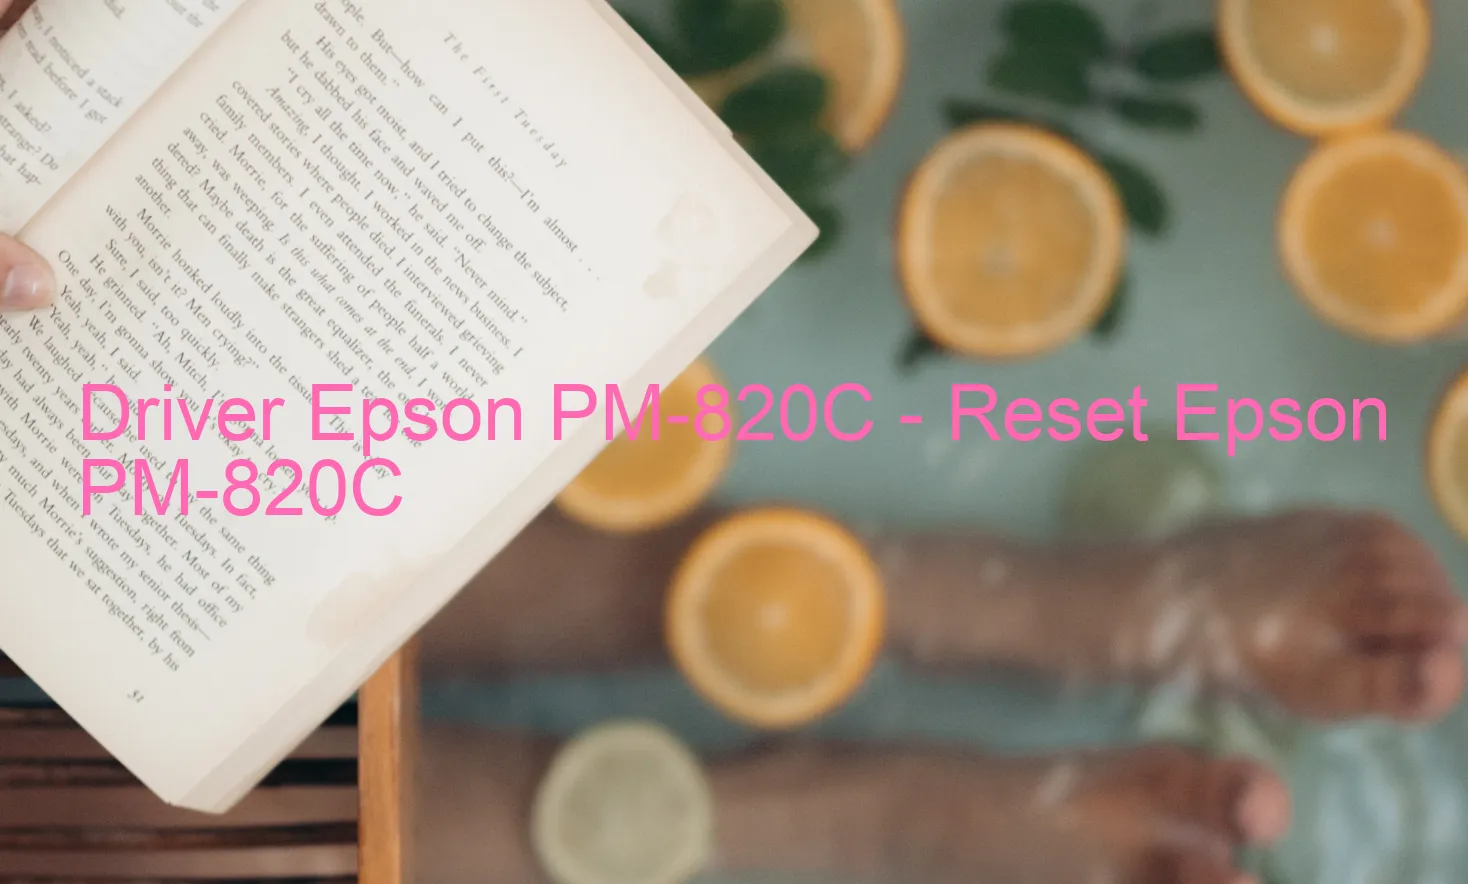 Epson PM-820Cのドライバー、Epson PM-820Cのリセットソフトウェア